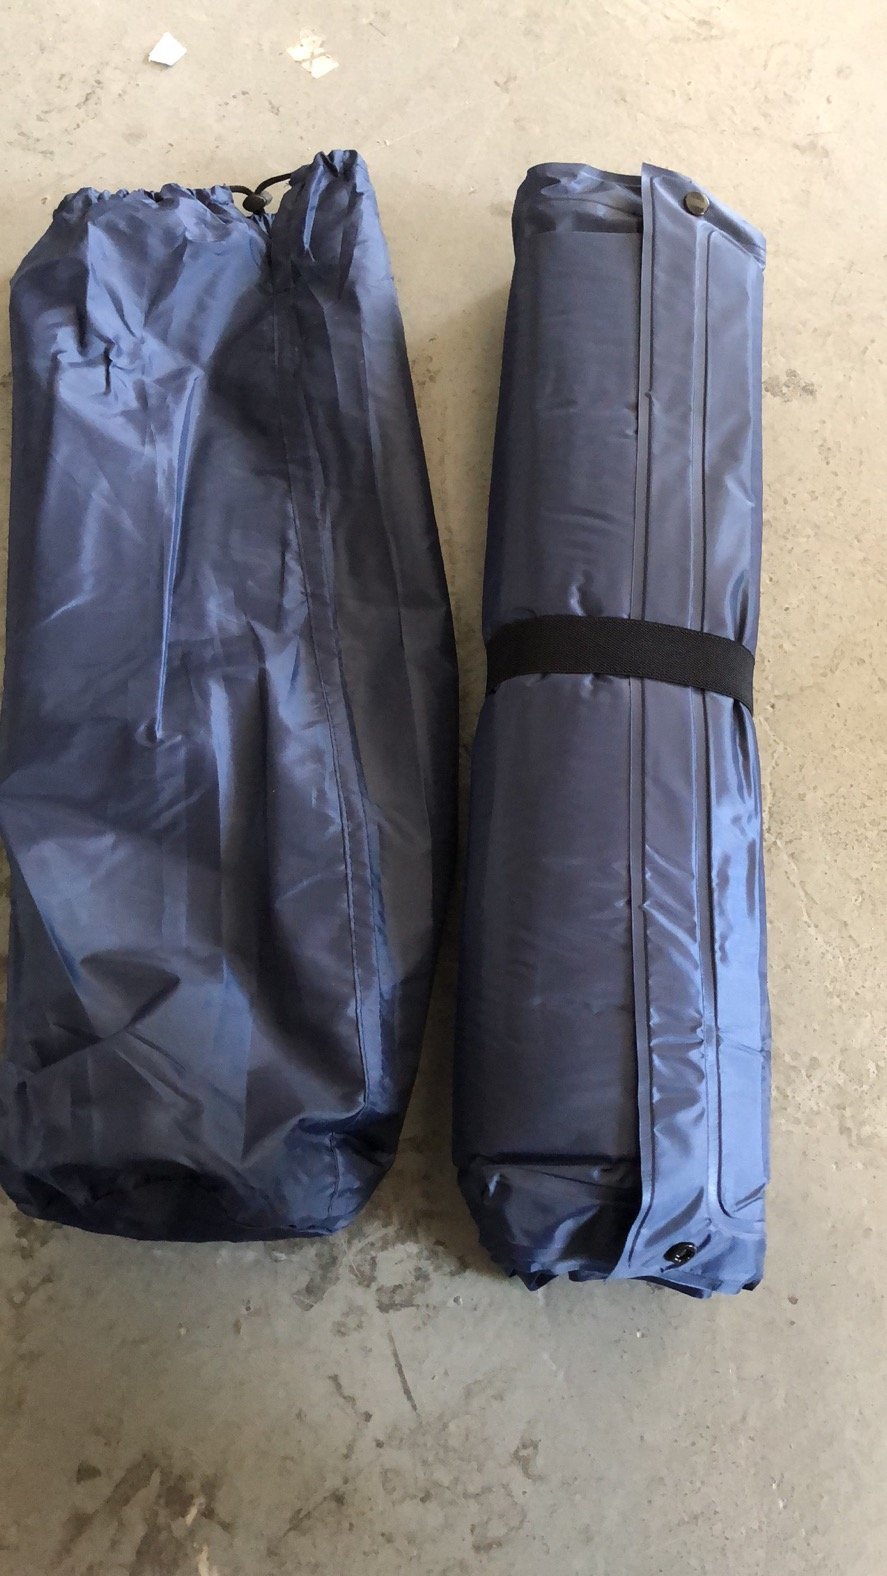 加厚 充氣墊 平板式可拼接單人自動充氣防水地蓆睡墊(深藍色) 185cm x 60cm 露營 野餐 戶外2.5cm 自動充氣地蓆